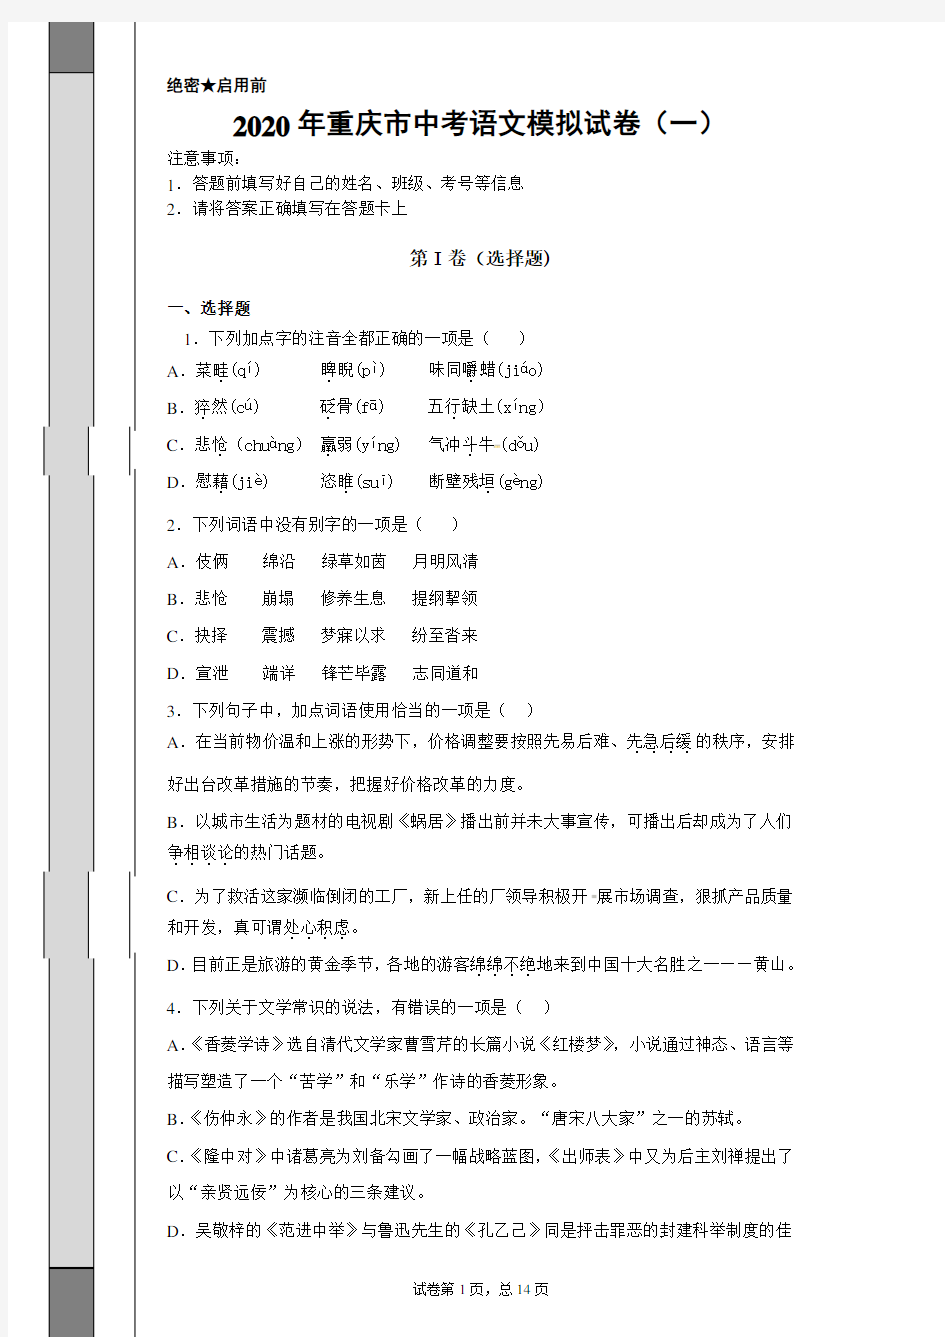 【中考冲刺】2020年重庆市中考语文模拟试卷(一)附答案